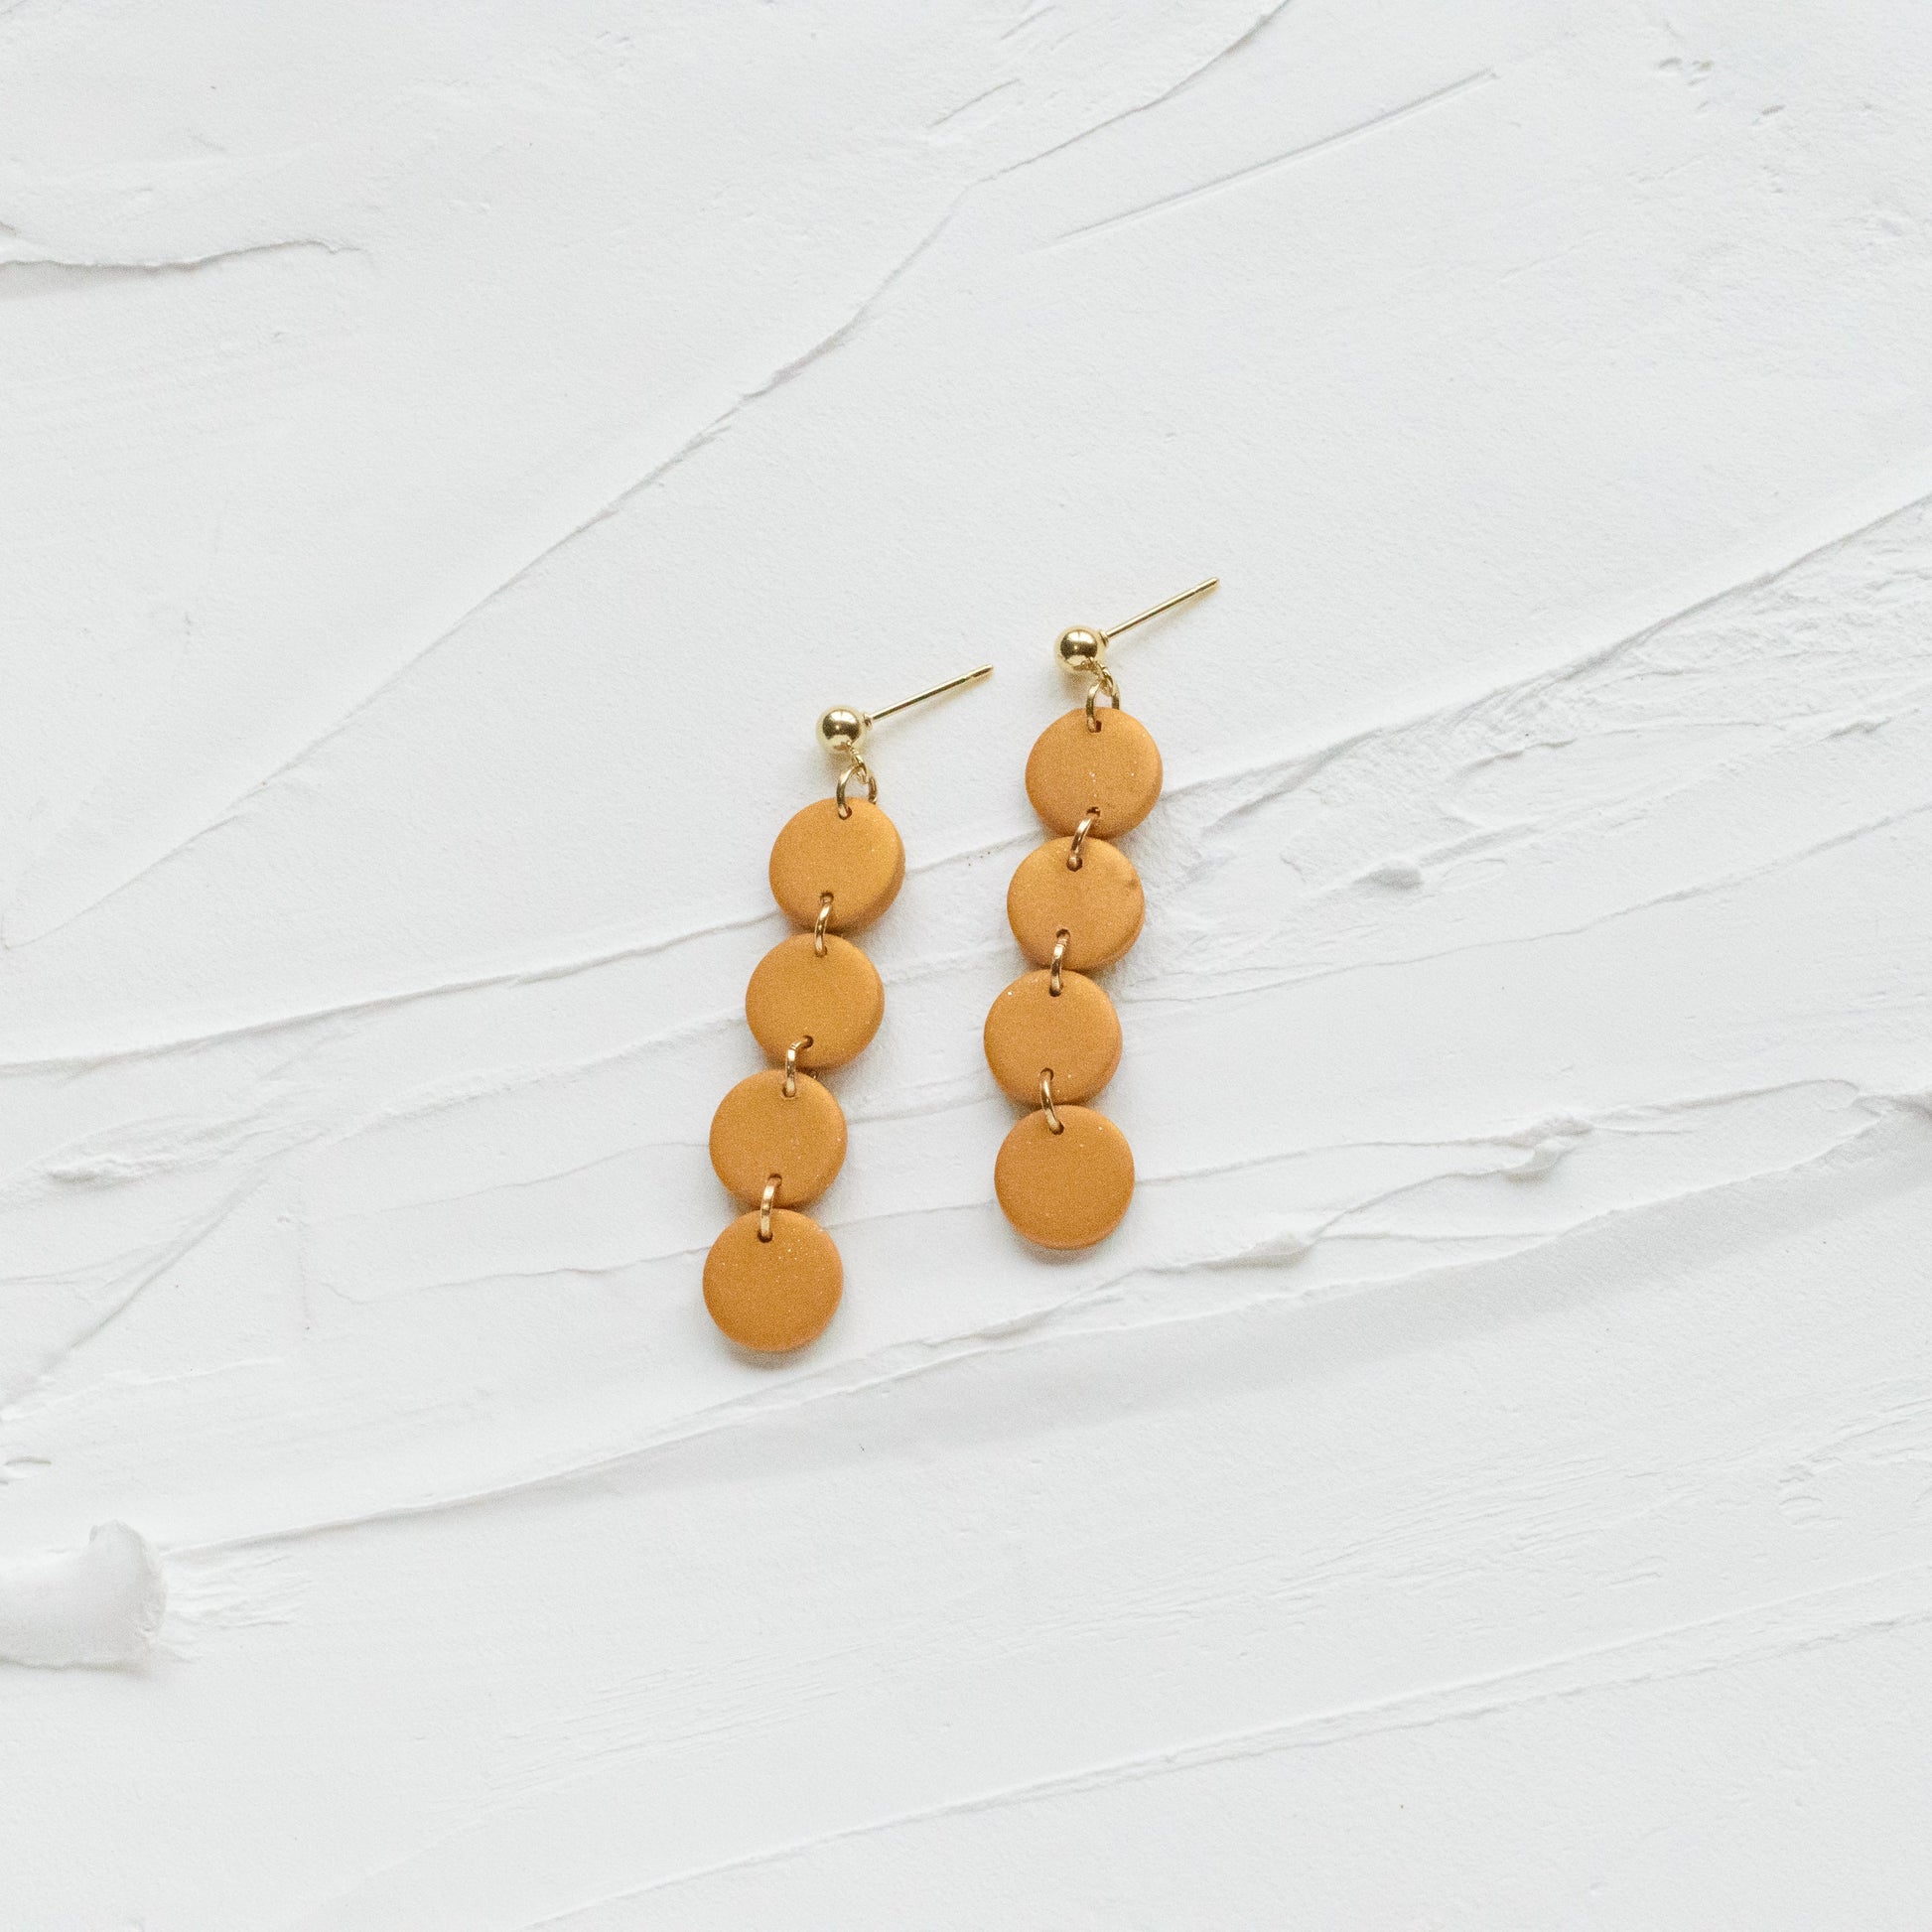 Mini Tiered Metallic Copper Earrings - Claymore NZ - Earrings